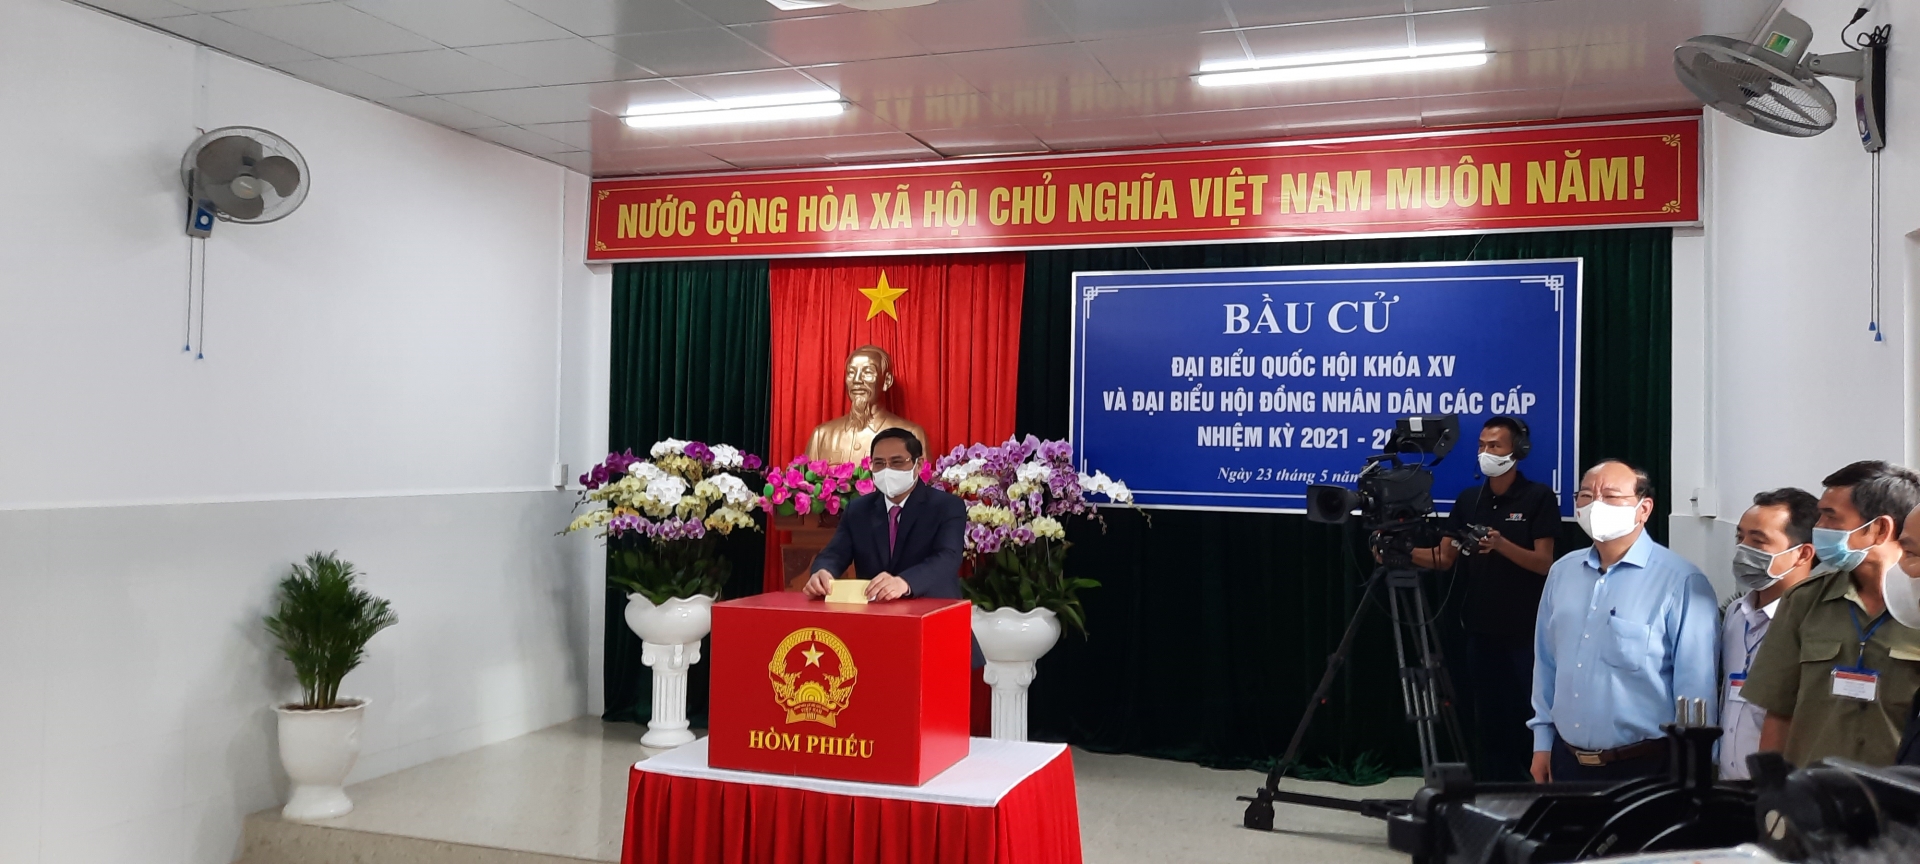 Thủ tướng Chính phủ Phạm Minh Chính bầu cử tại thành phố Cần Thơ